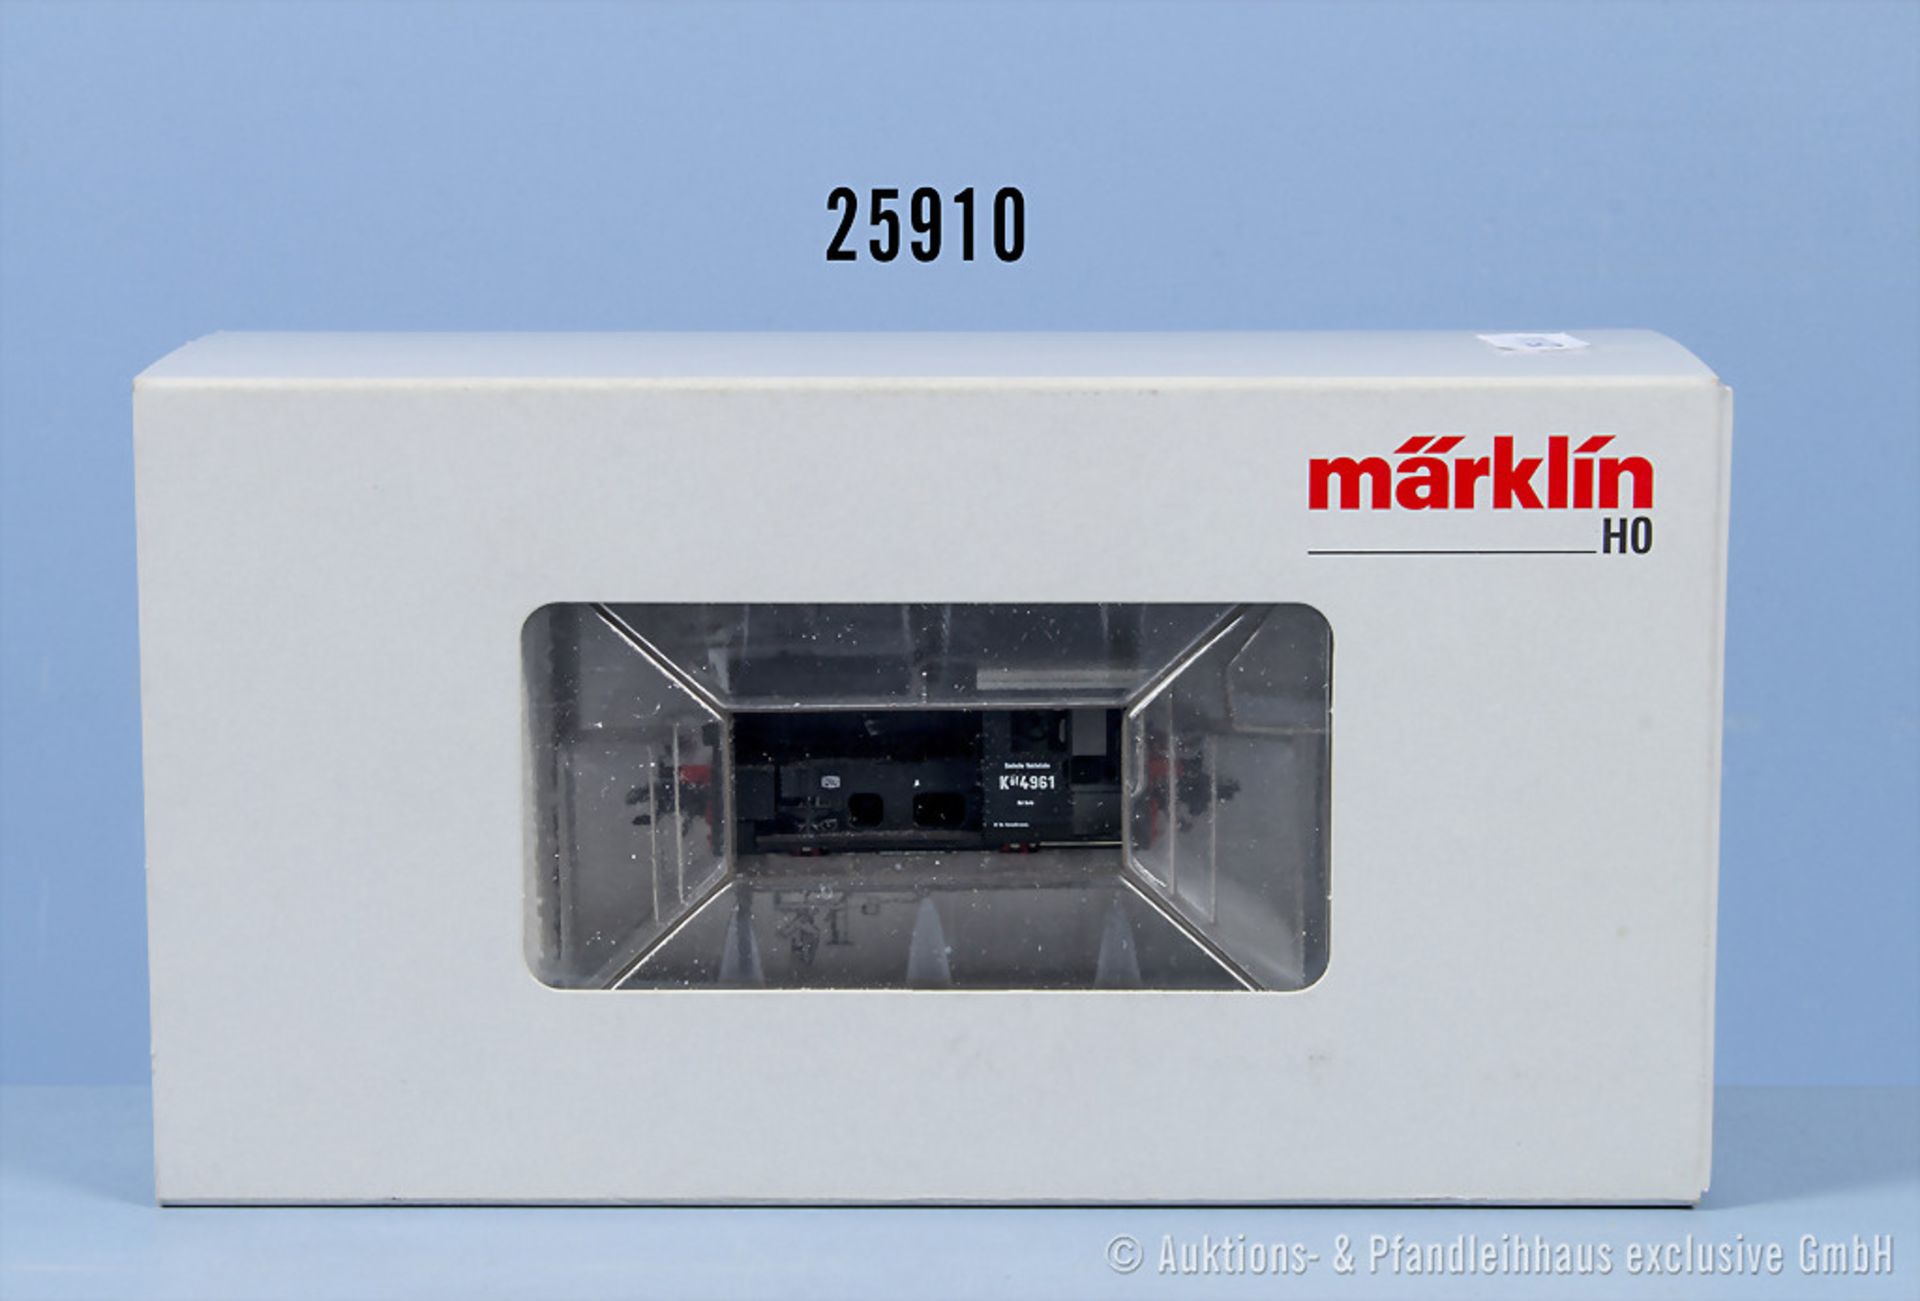 Märklin mfx digital H0 36822 Diesellok der DR, BN 4961, Zustand 0-1, in OVP, OVP mit ...